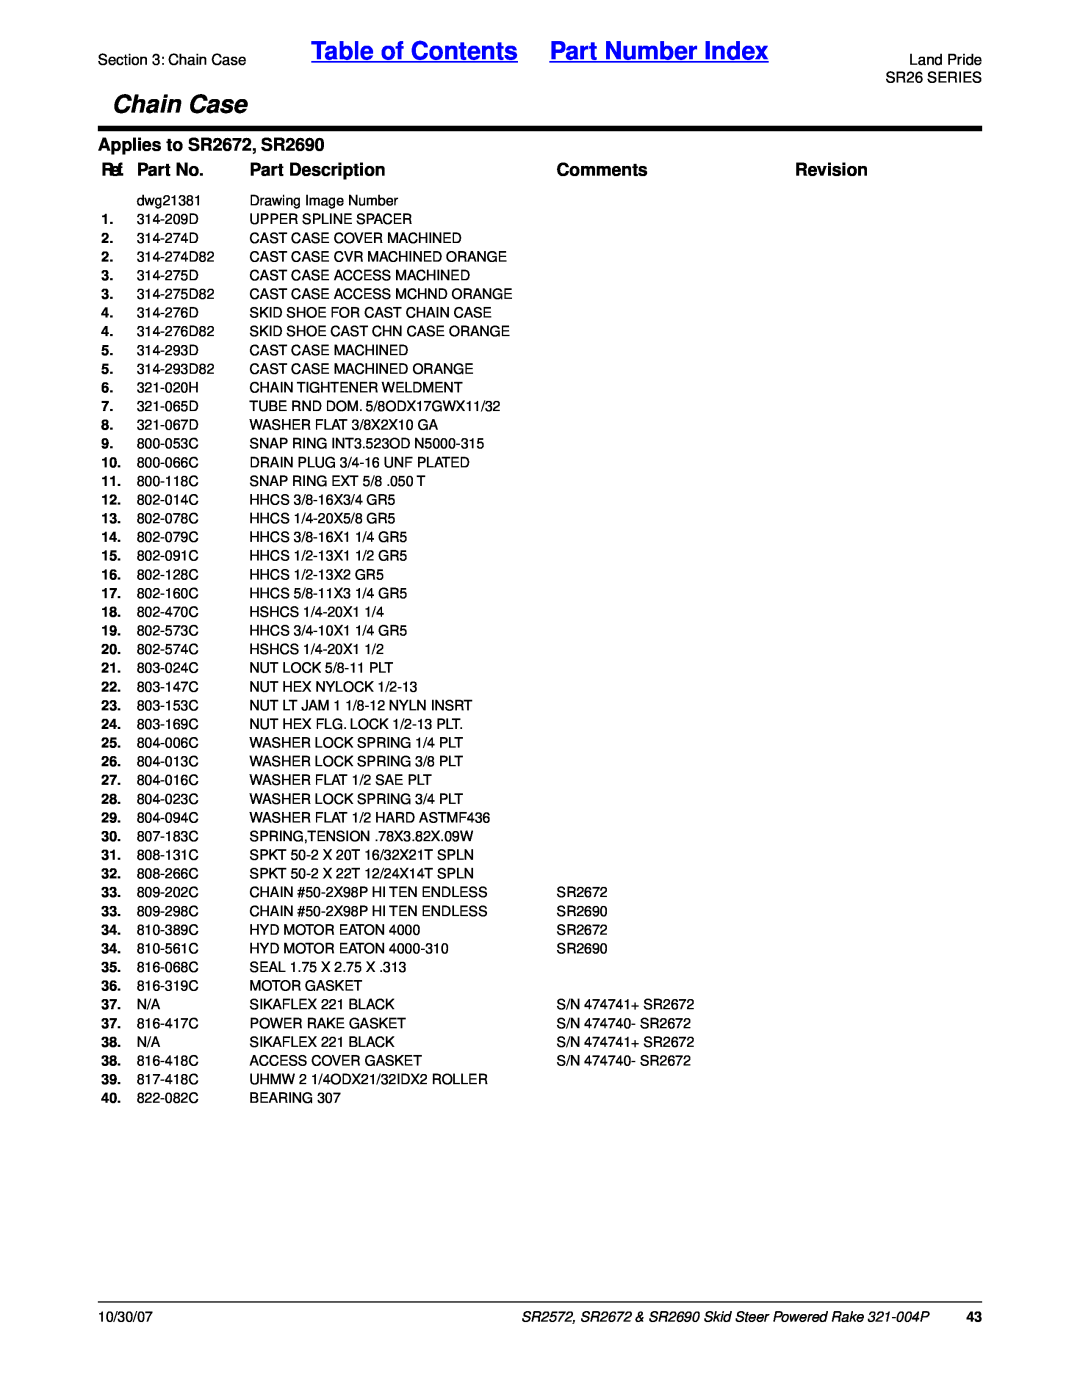 Land Pride Table of Contents Part Number Index, Chain Case, Applies to SR2672, SR2690, Ref. Part No, Part Description 